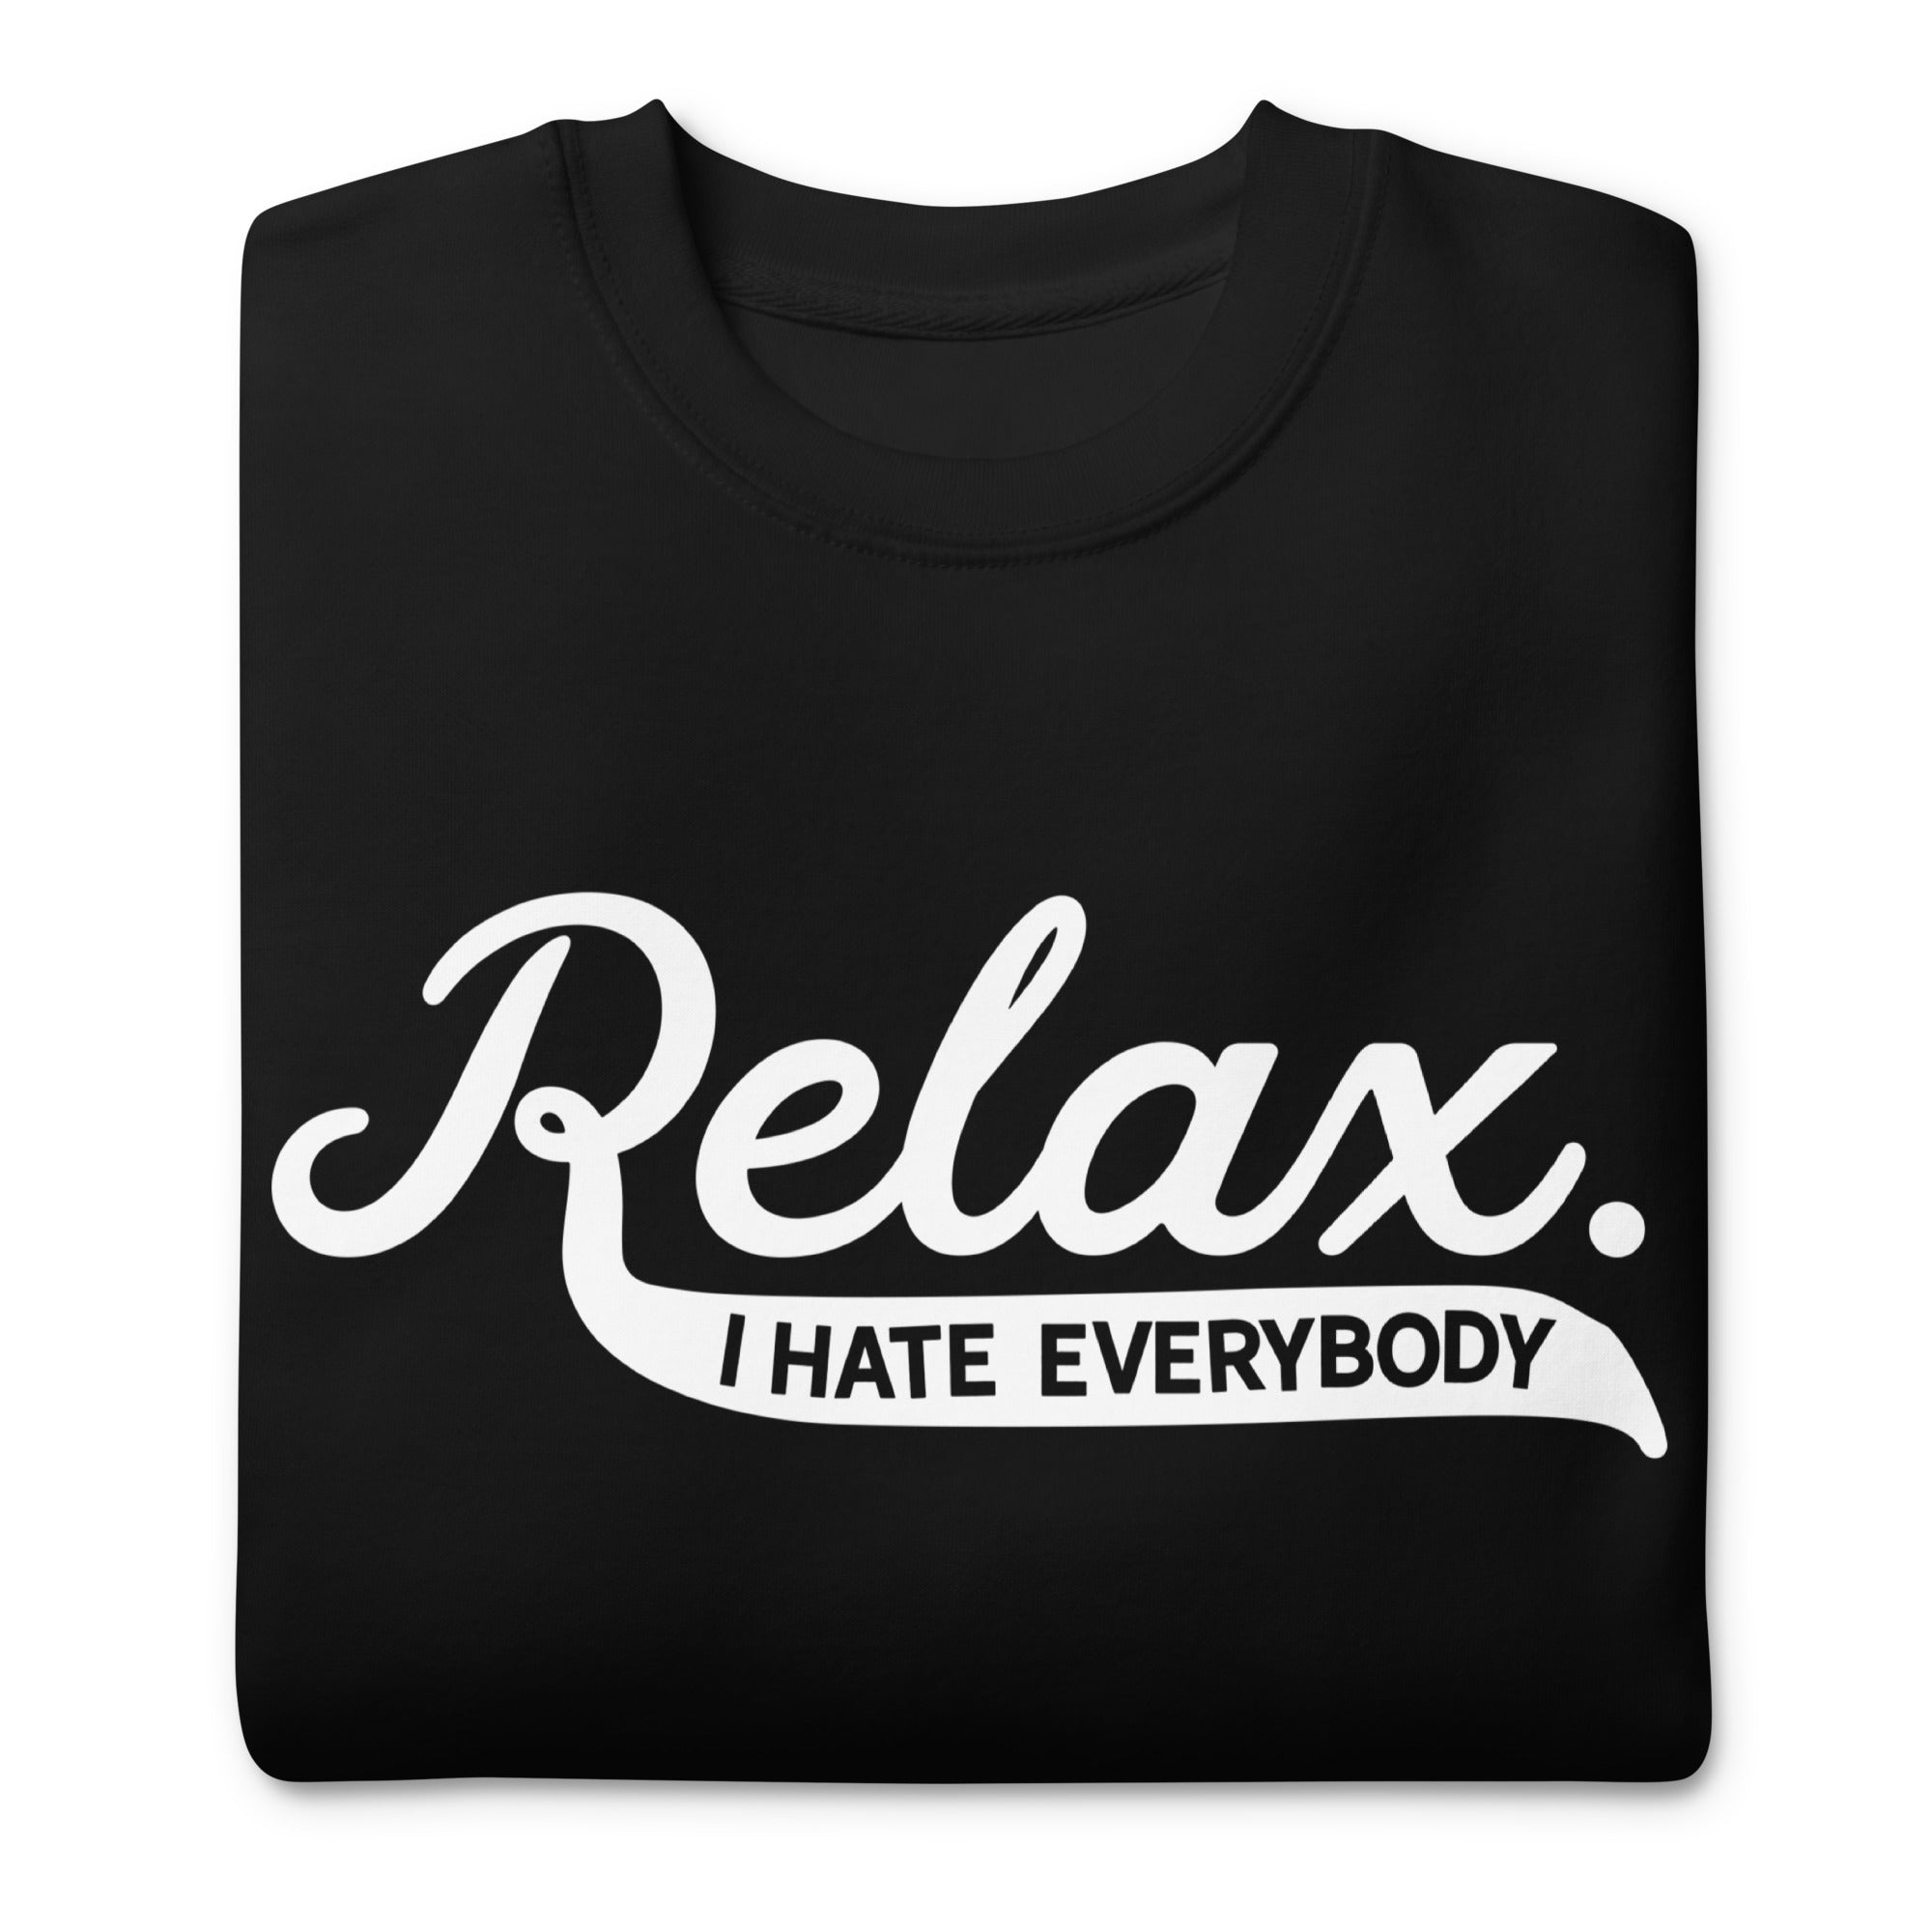 Relax I Hate Everbody Unisex fleece sweatshirt